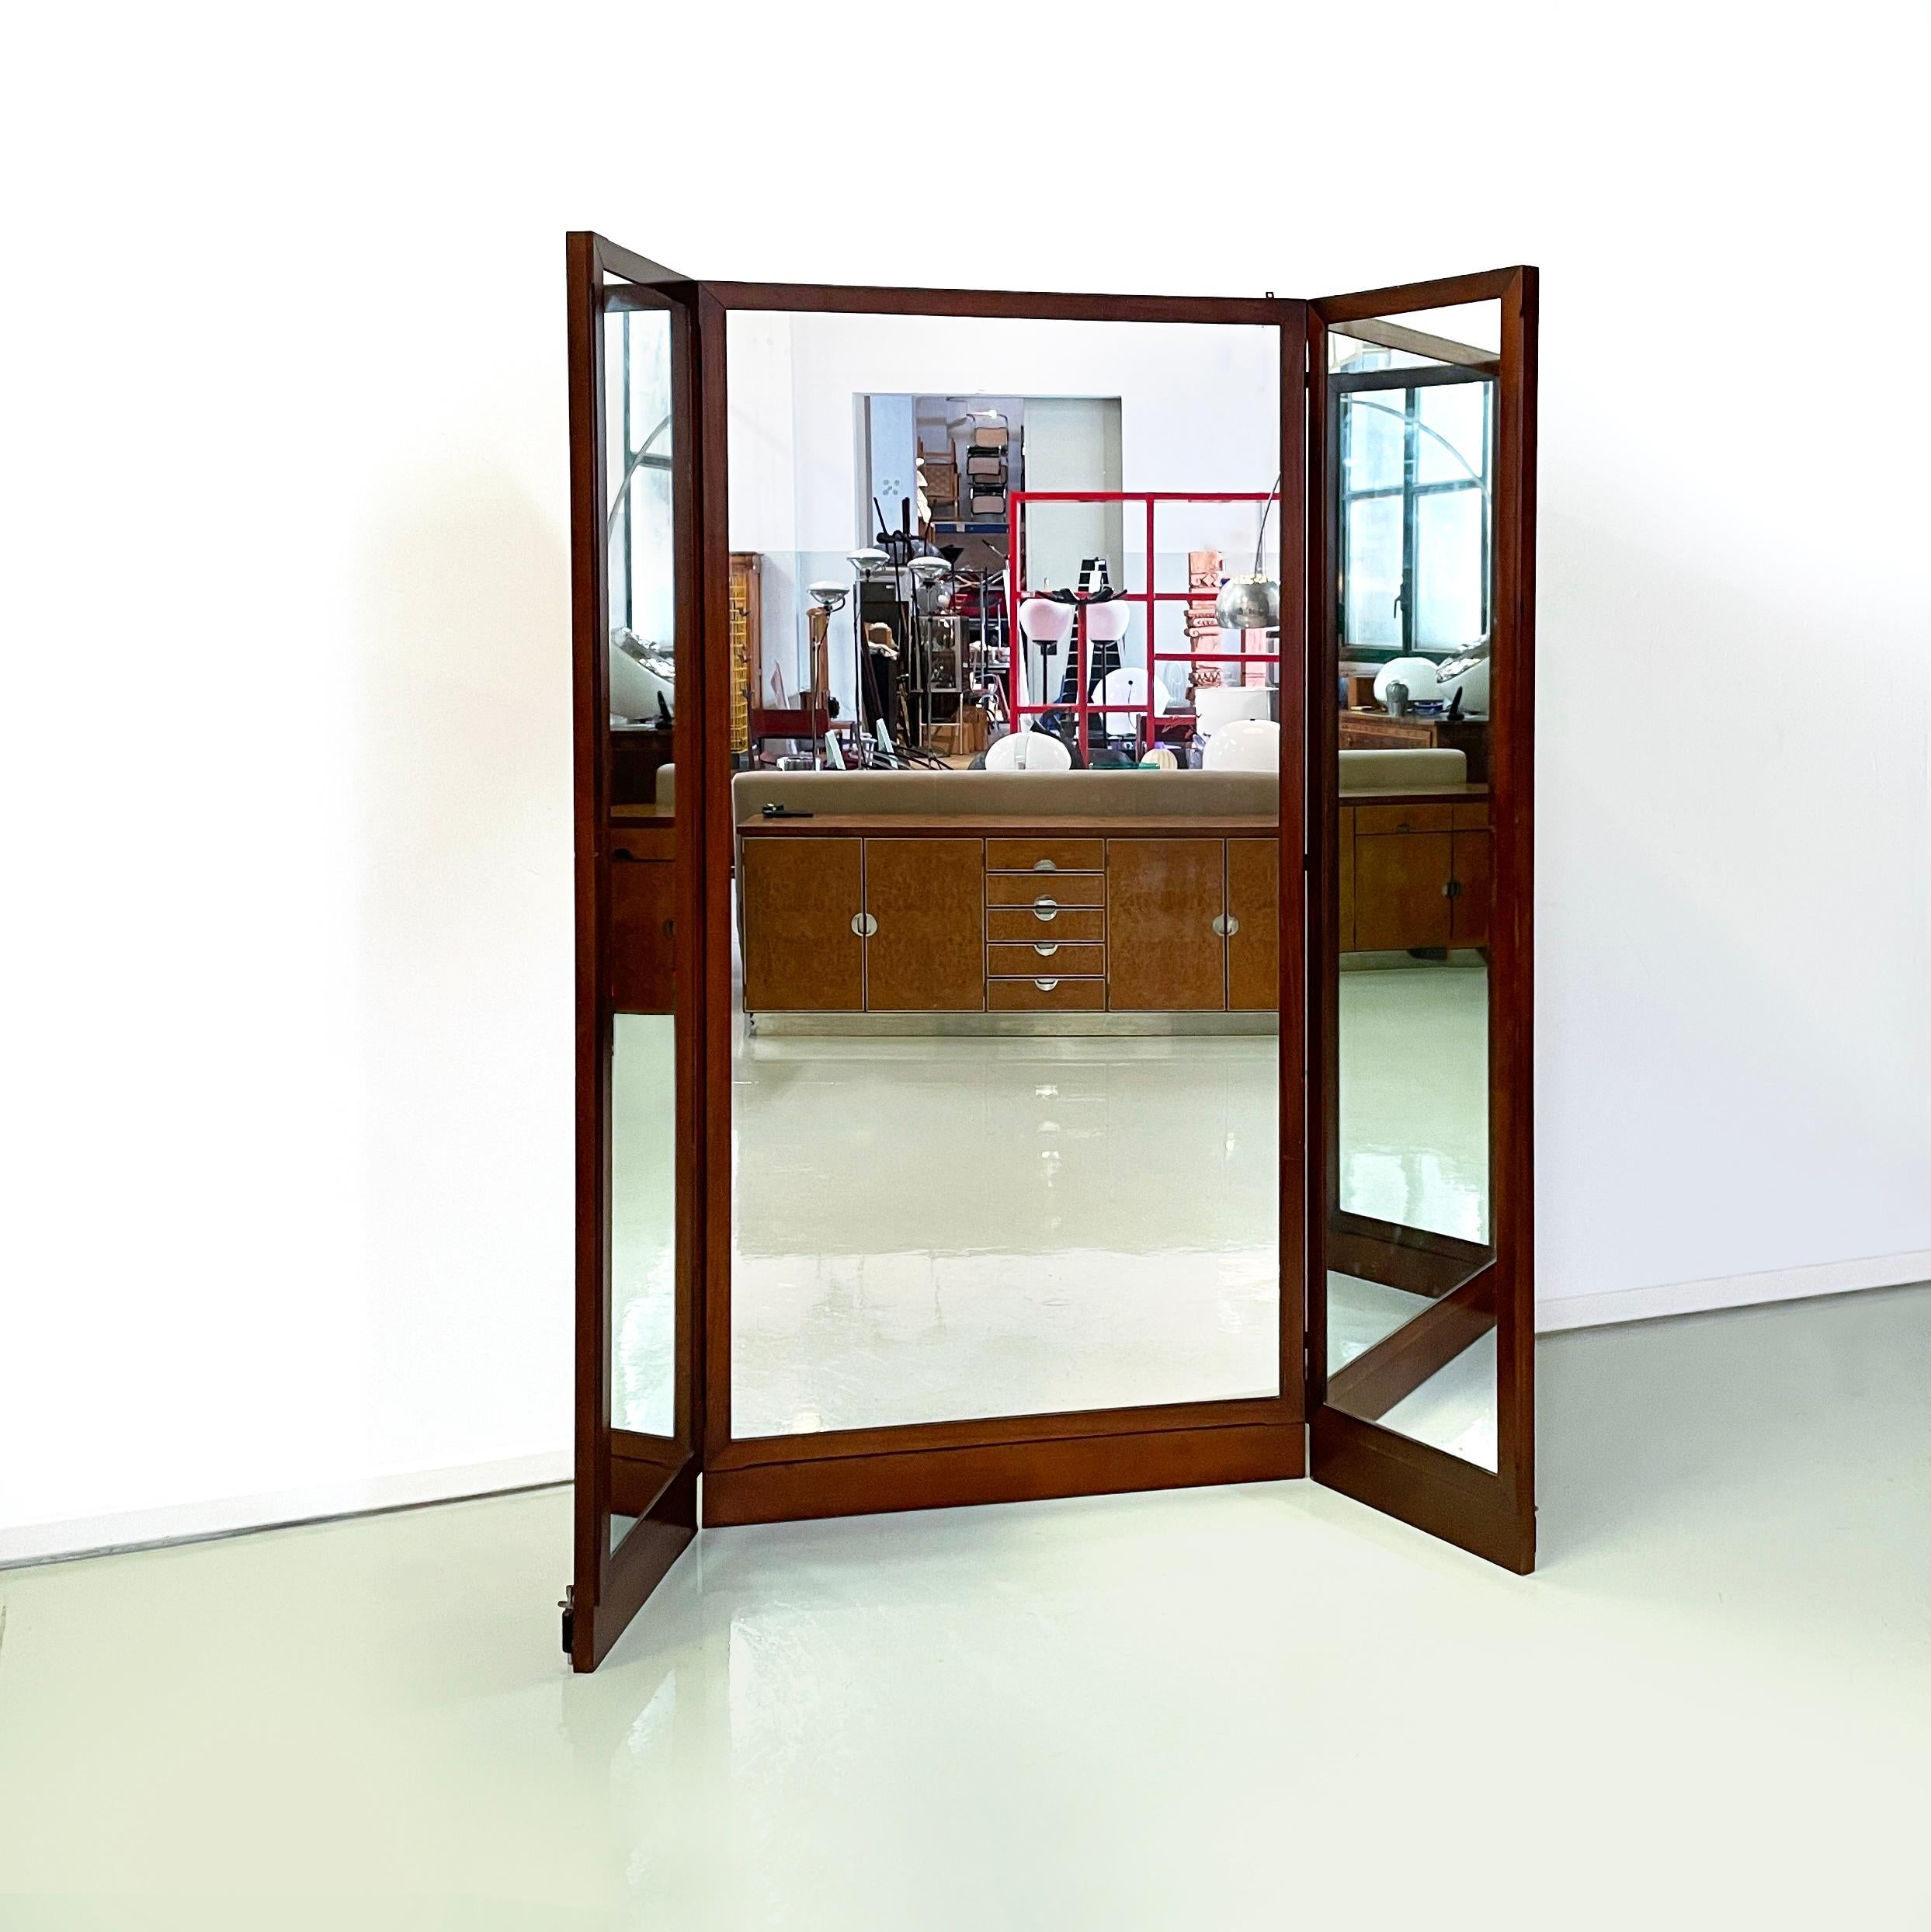 Italienisch Mitte des Jahrhunderts modern Freistehender Bodenspiegel aus Holz, 1960er Jahre
Freistehender, bodengleicher Spiegel mit 3 Türen. Die Struktur und die Profile der Spiegel sind aus Holz gefertigt. Dieser Schneiderspiegel kann nach